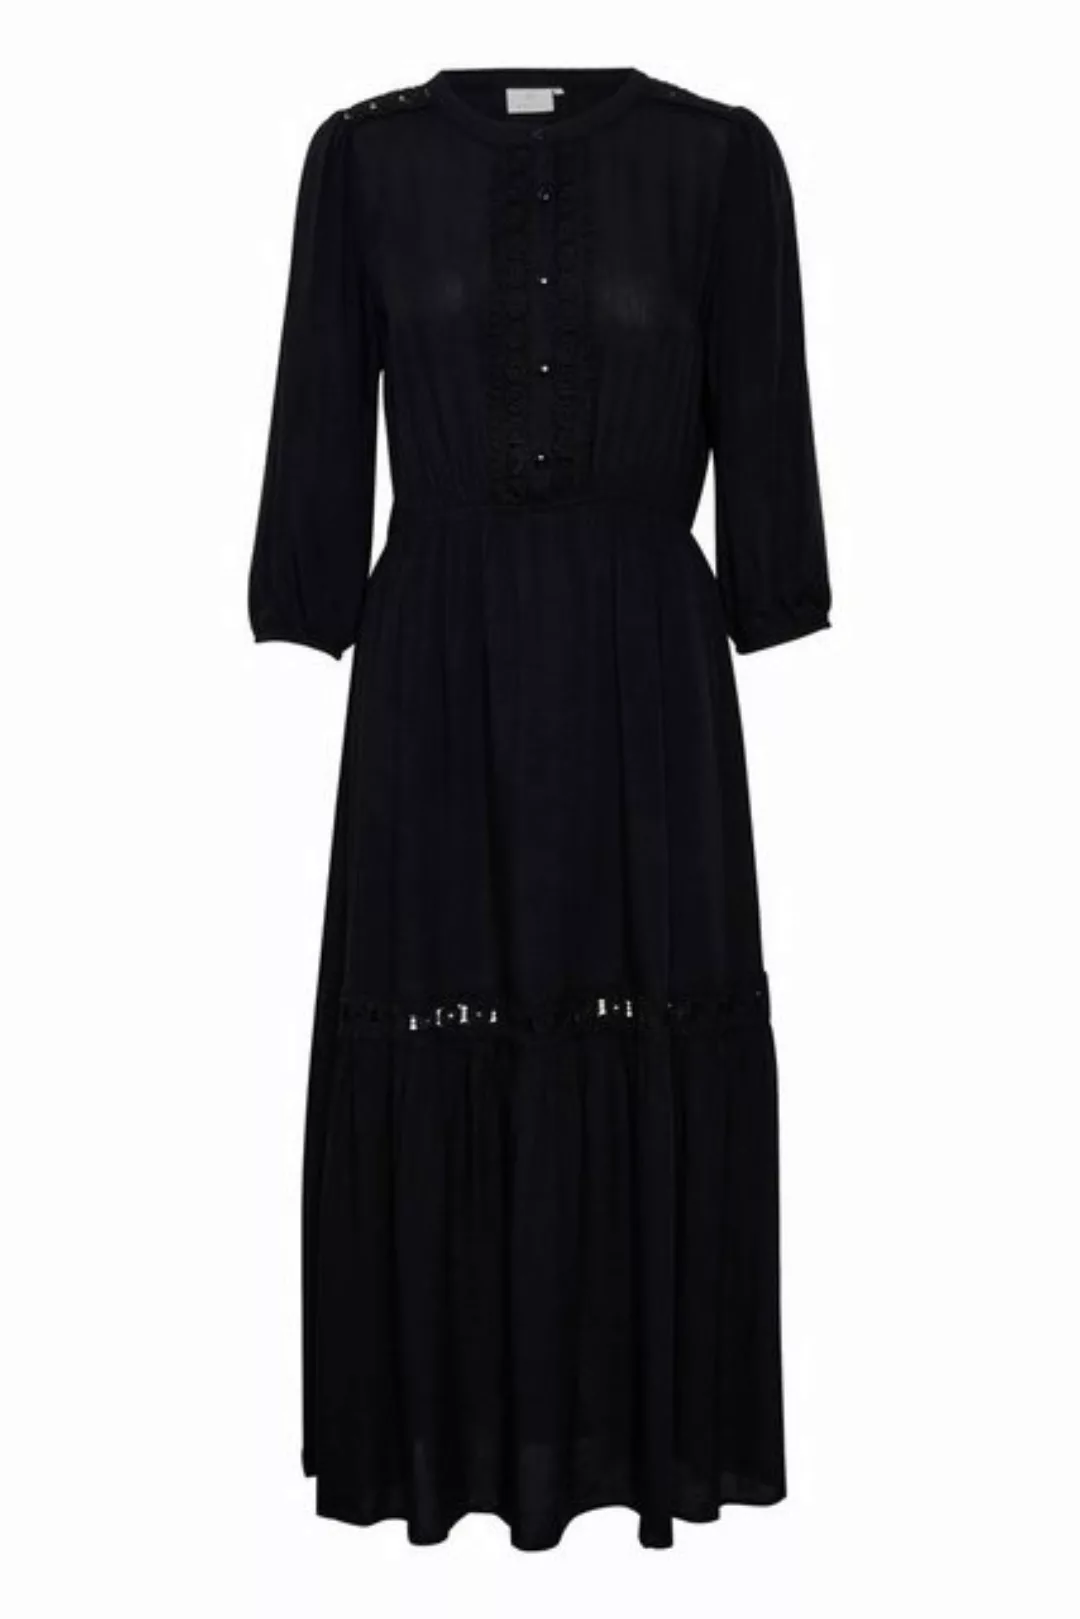 KAFFE Jerseykleid Kleid KAfreya günstig online kaufen